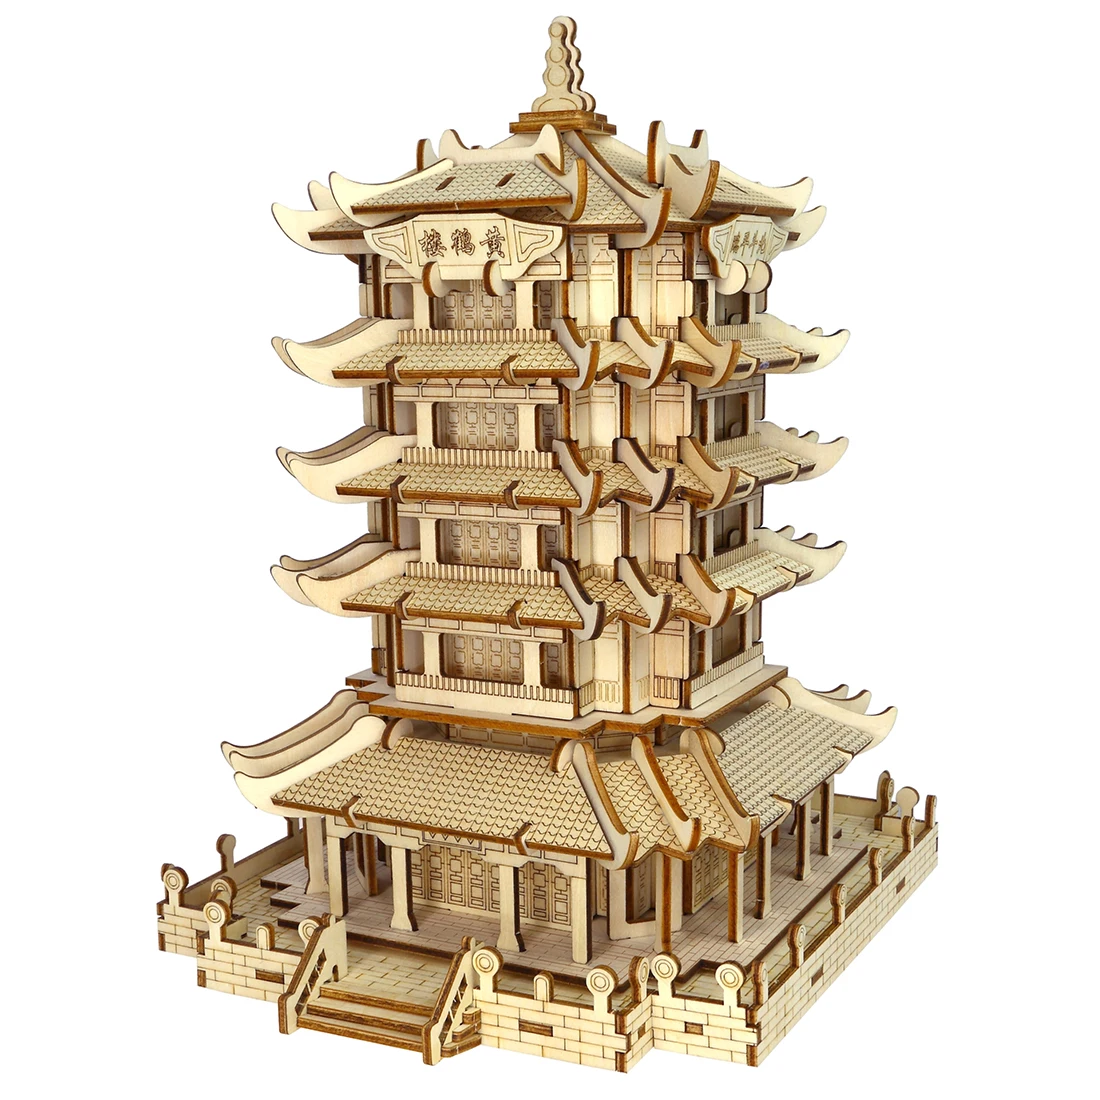 Высокоточная лазерная резка головоломка 3D деревянная тема в китайском стиле модель головоломки для детей-Yueyang башня/желтая башня крана - Цвет: 2